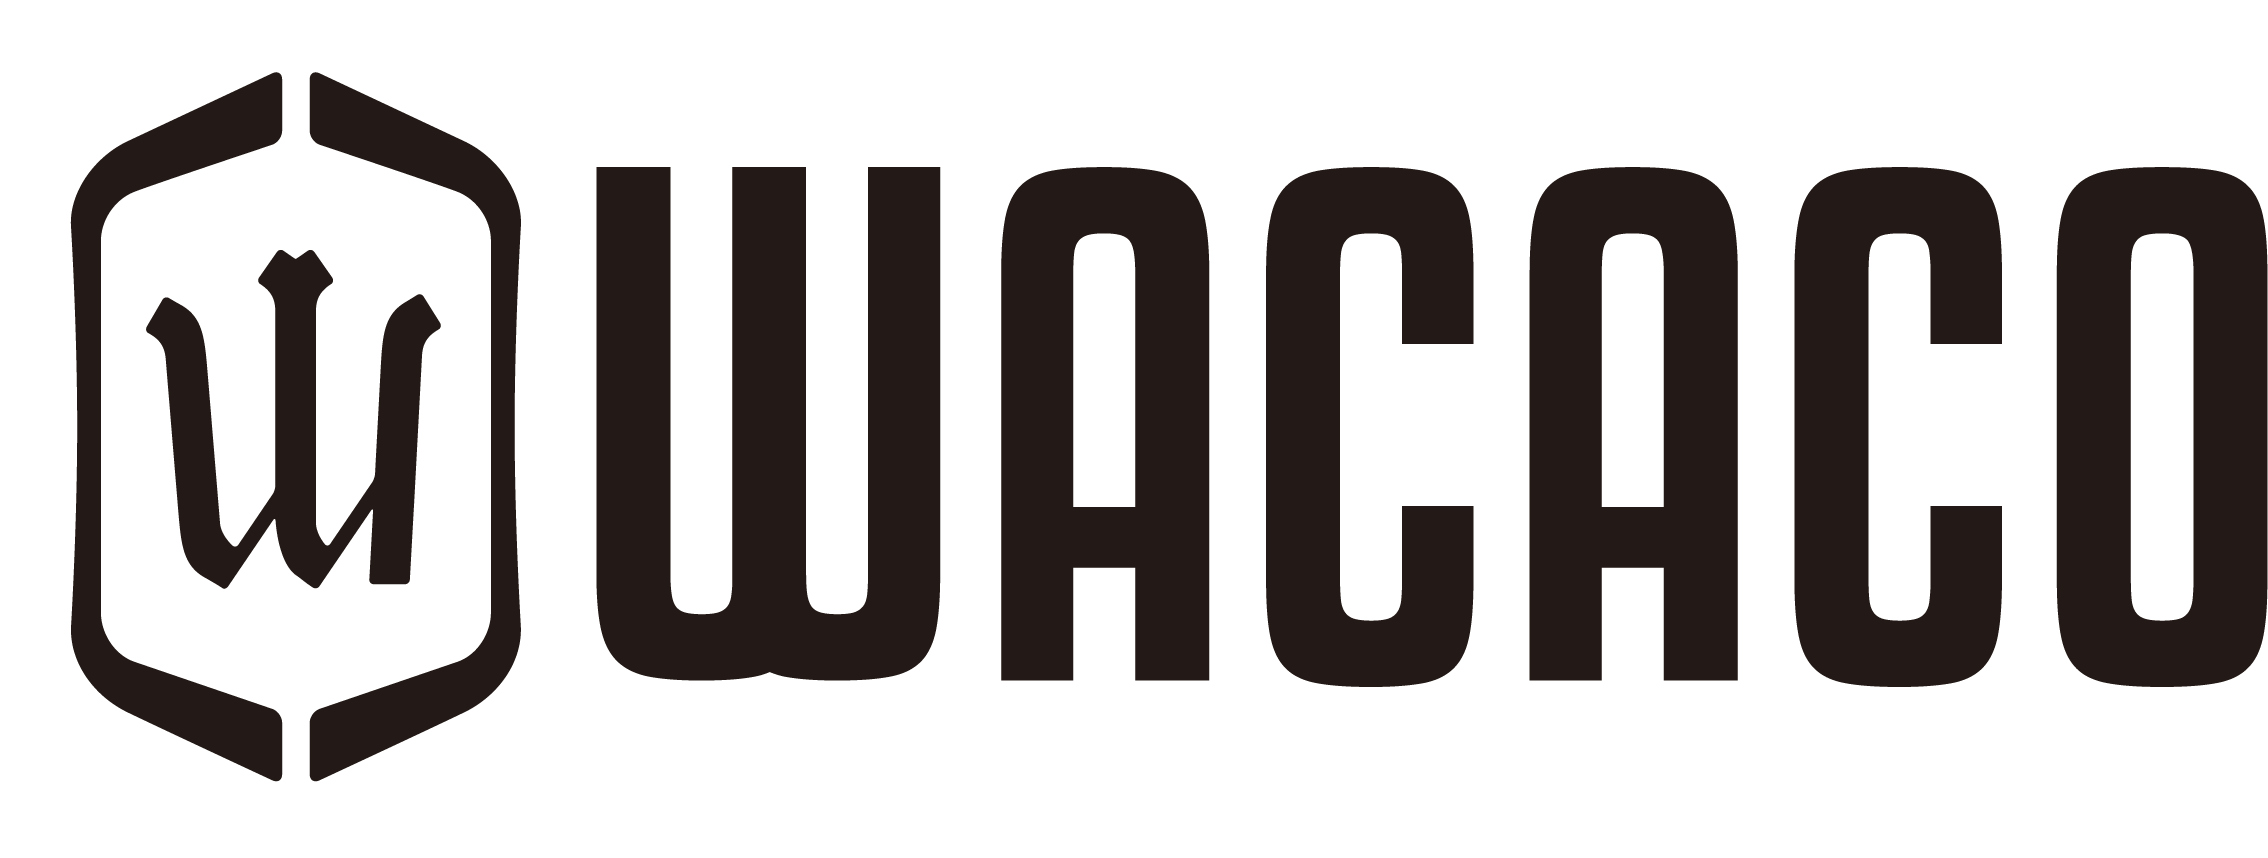 واکاکو | wacaco